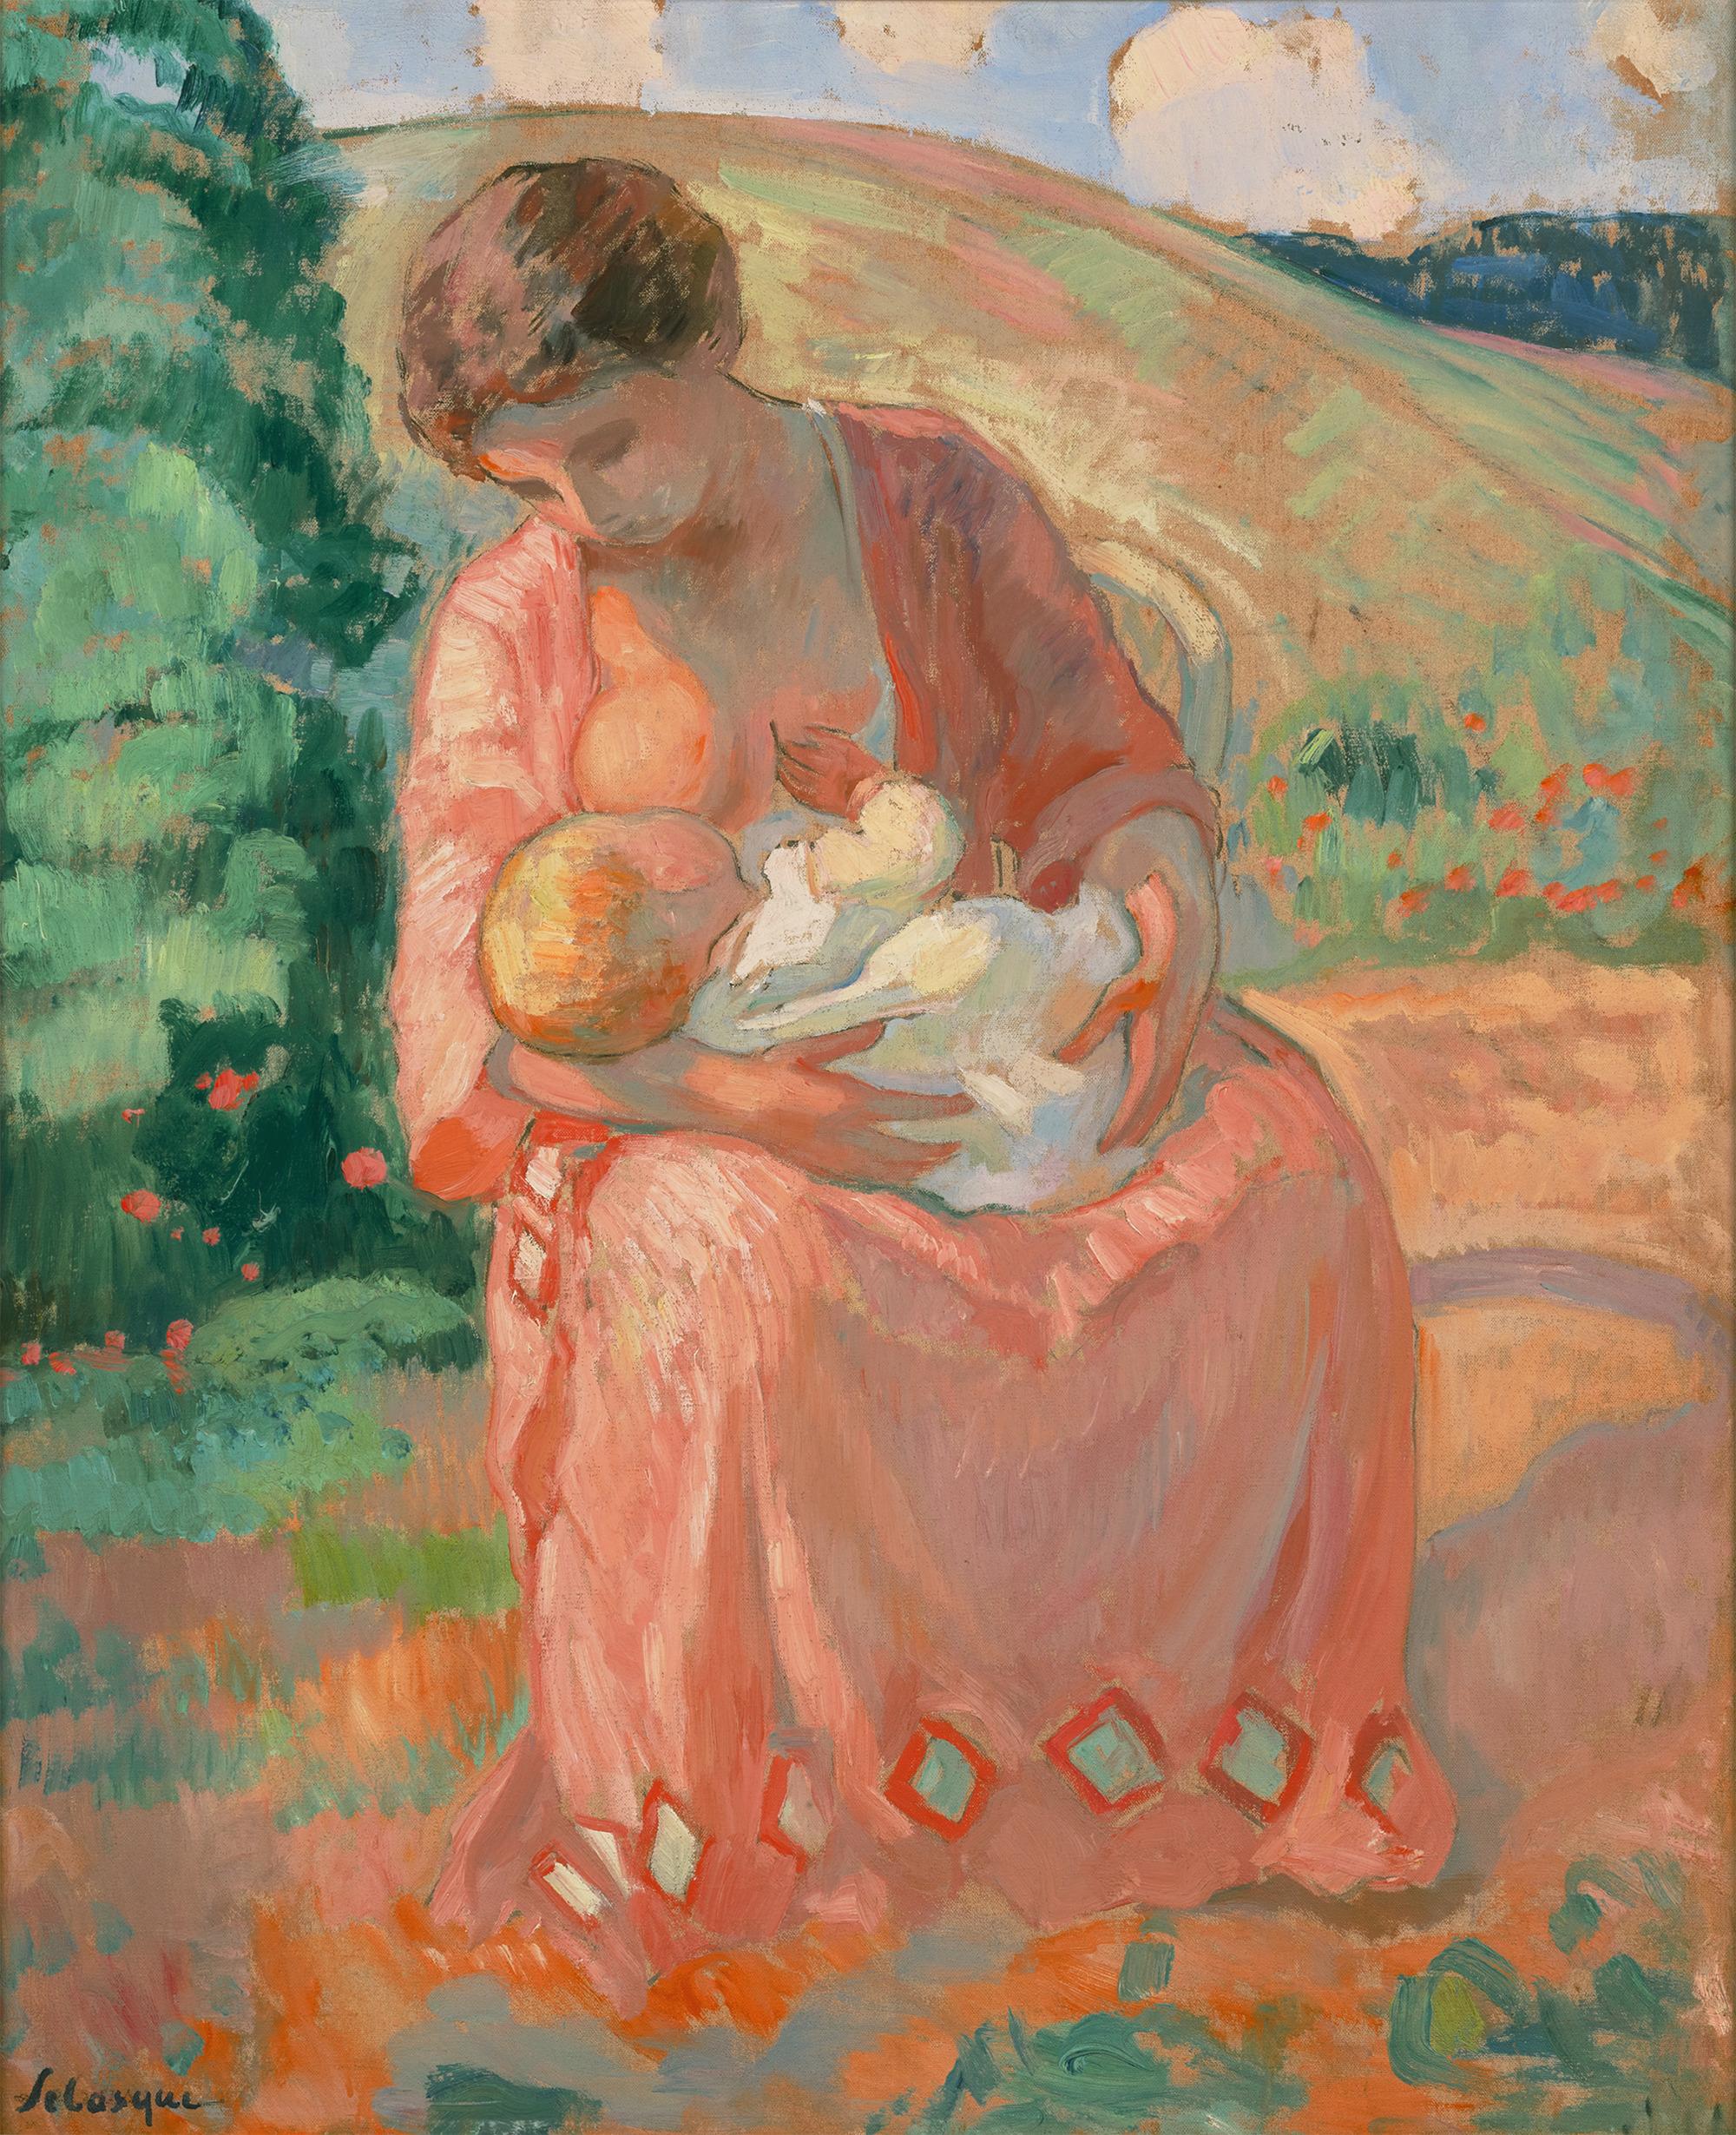 Henri Lebasque
1865-1937  Französisch

Maternité
(Mutterschaft)

Öl auf Leinwand
Signiert "Lebasque" (unten links)

In diesem überschwänglichen Ölgemälde fängt Henri Lebasque eine kontemplative Szene ein, in der eine junge Mutter einen Säugling